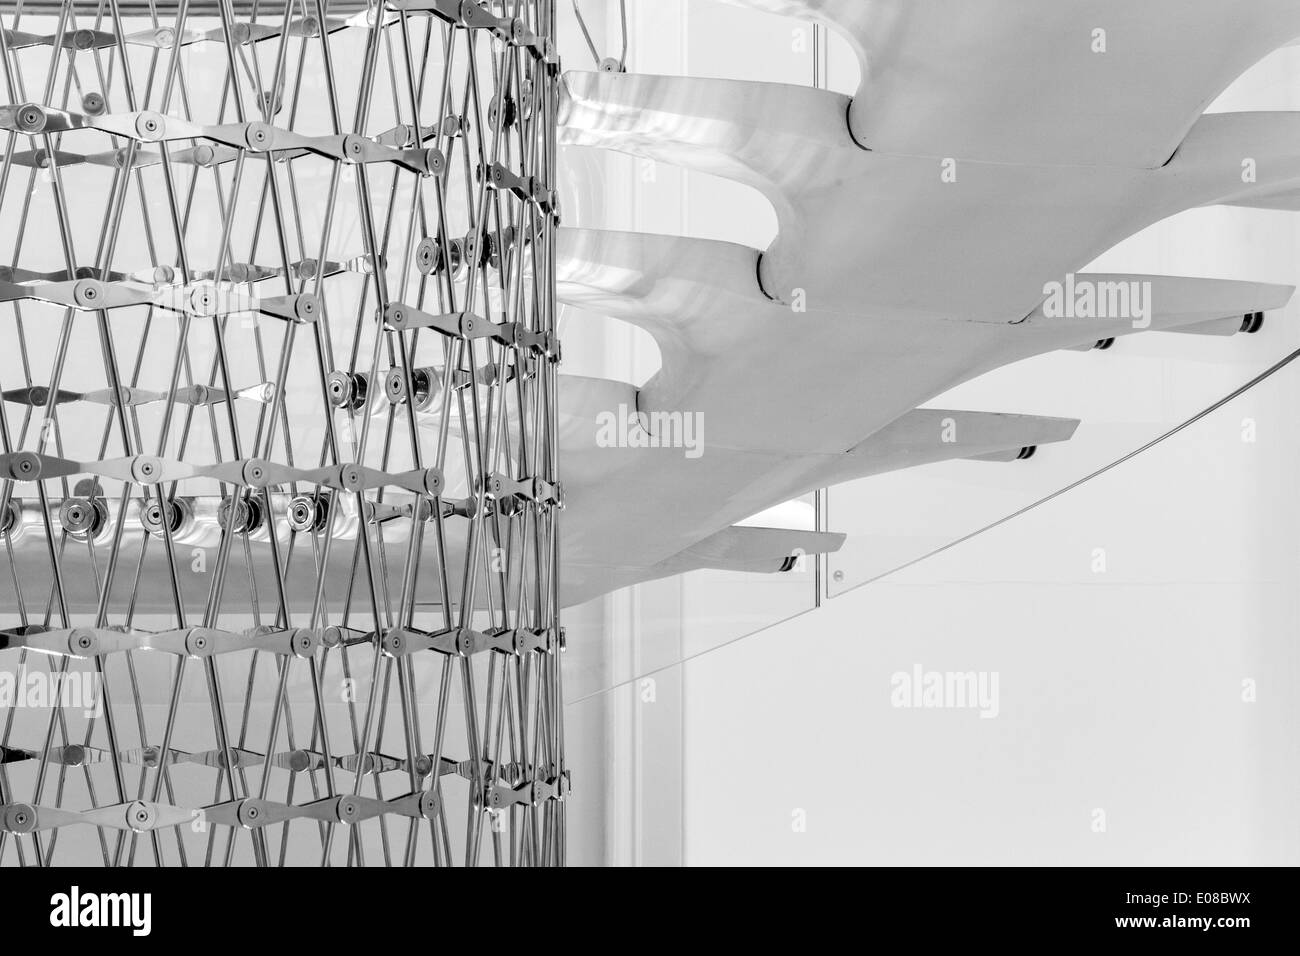 Treppenhaus im Somerset House in London, Vereinigtes Königreich. Architekt: Eva Jiricna Architects Ltd, 2014. Stockfoto